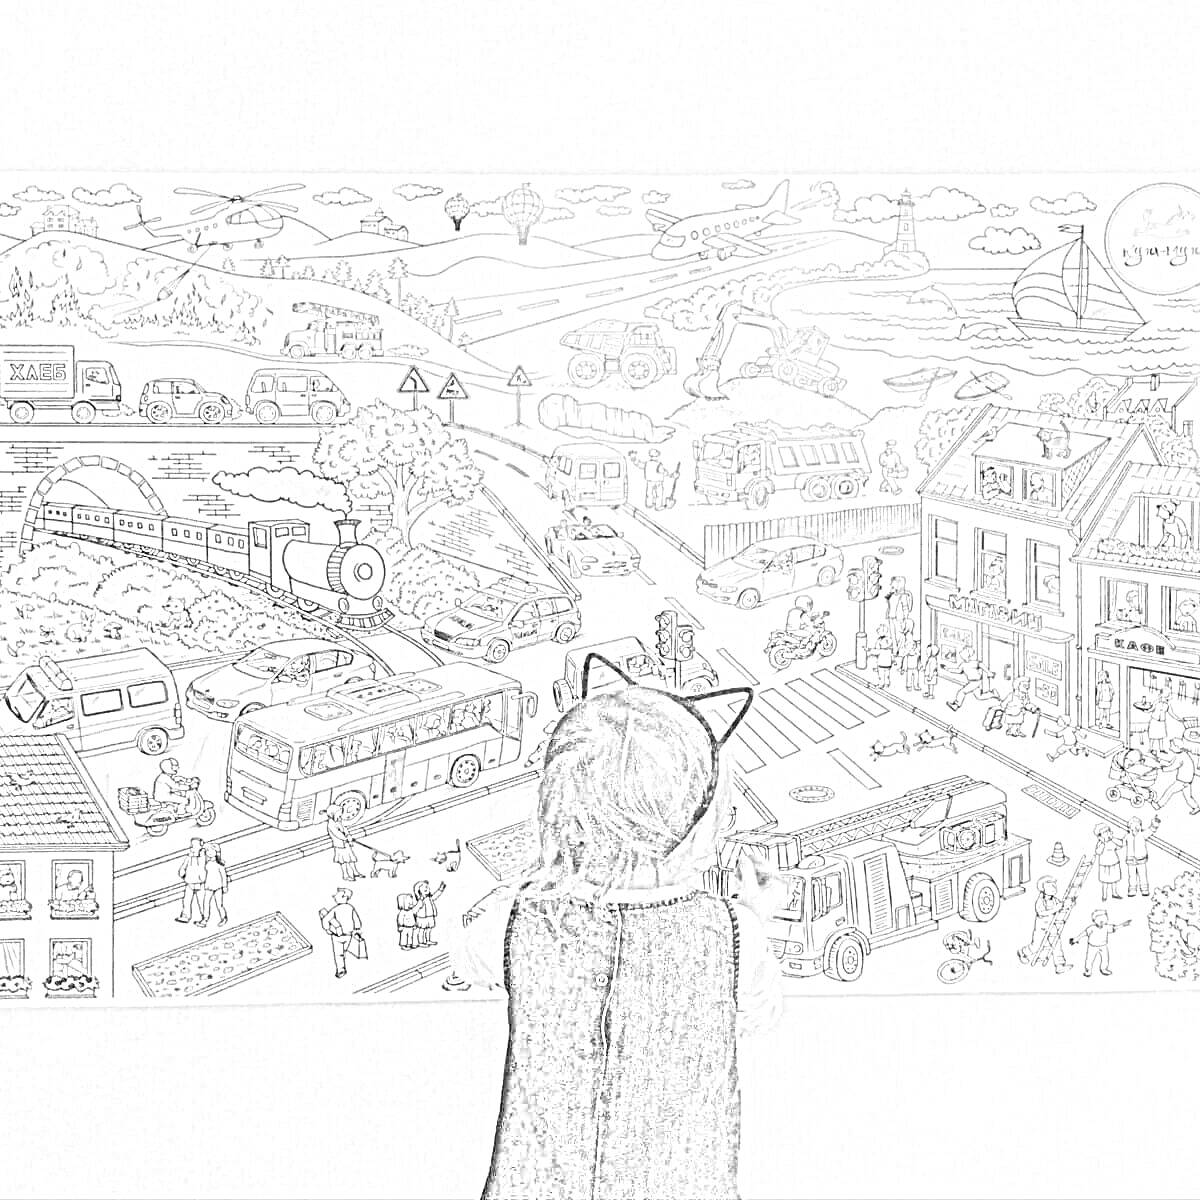 Раскраска Большая панорамная раскраска с городскими и сельскими пейзажами, зданиями, дорогами, машинами, поездом, аэропланом, воздушным шаром и человеком, раскрашивающим её.